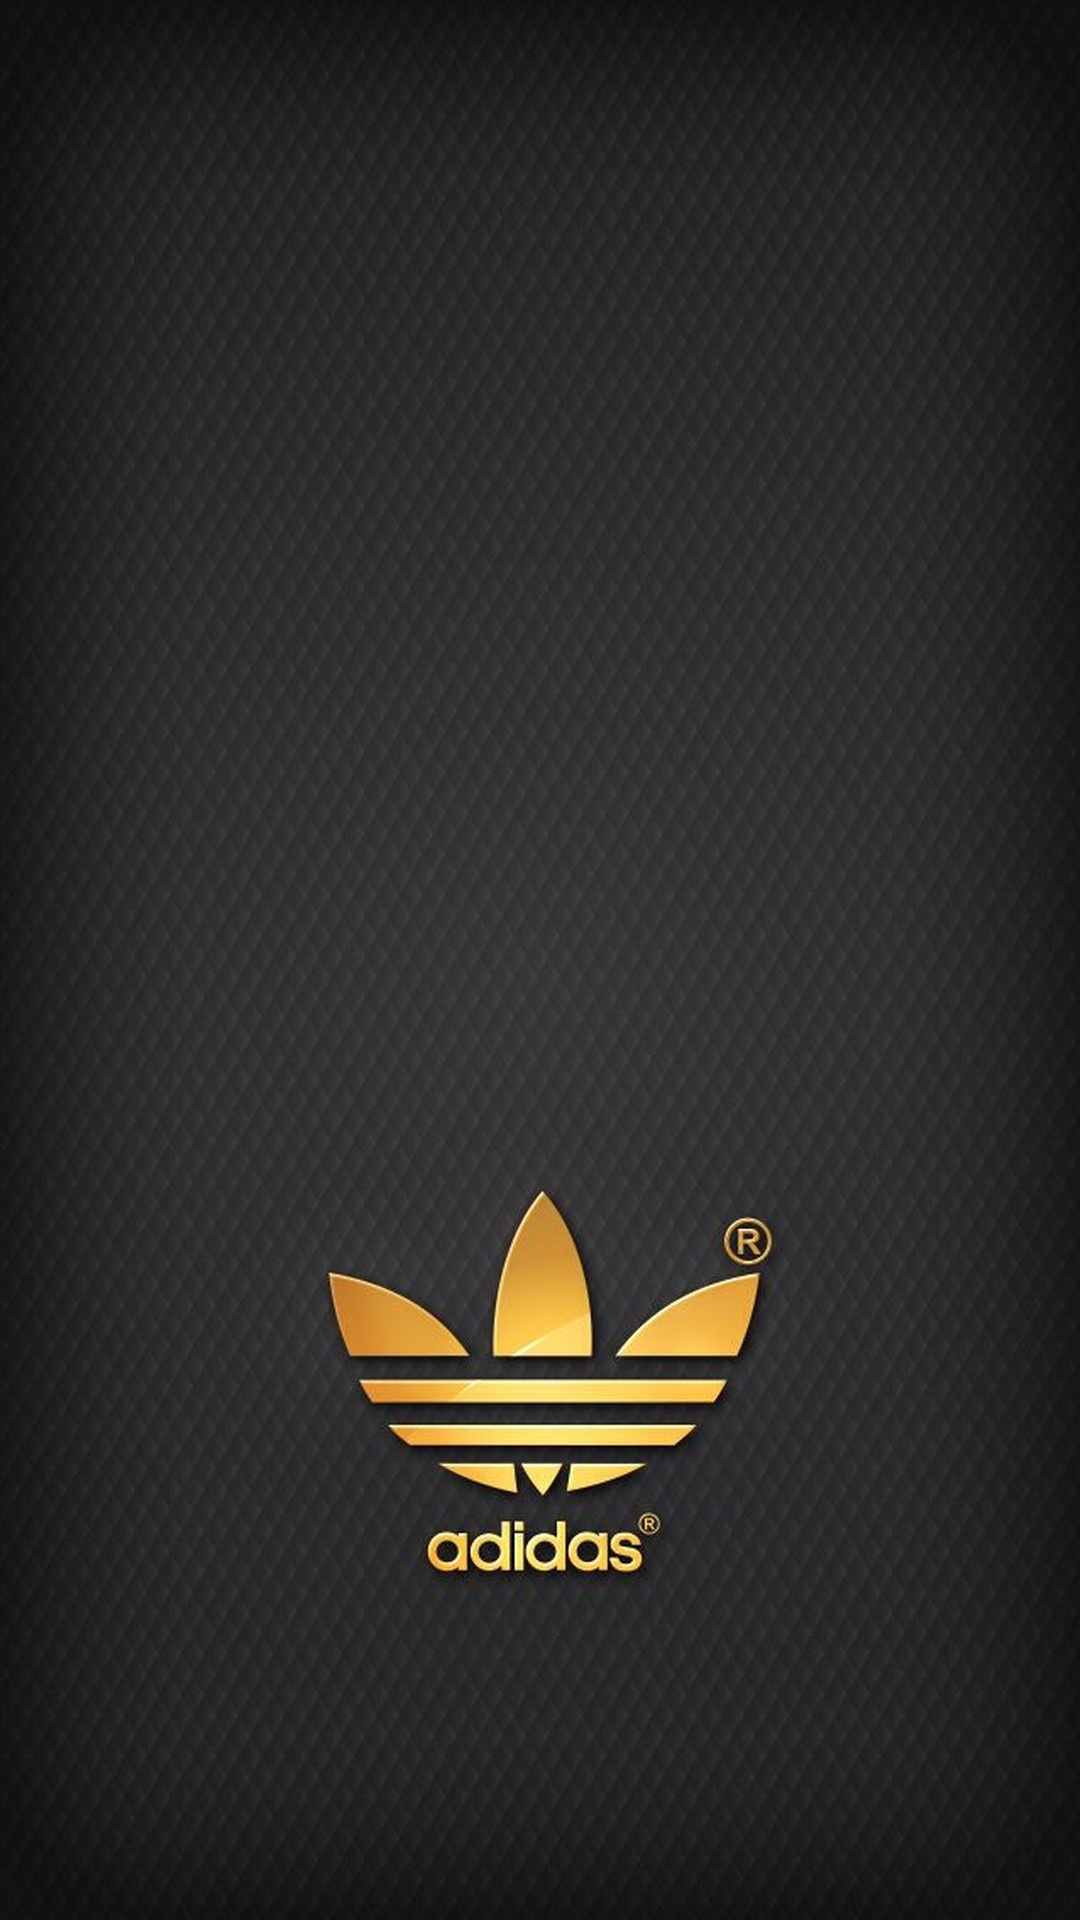 Adidas logo background, 1080x1920 Full HD Handy